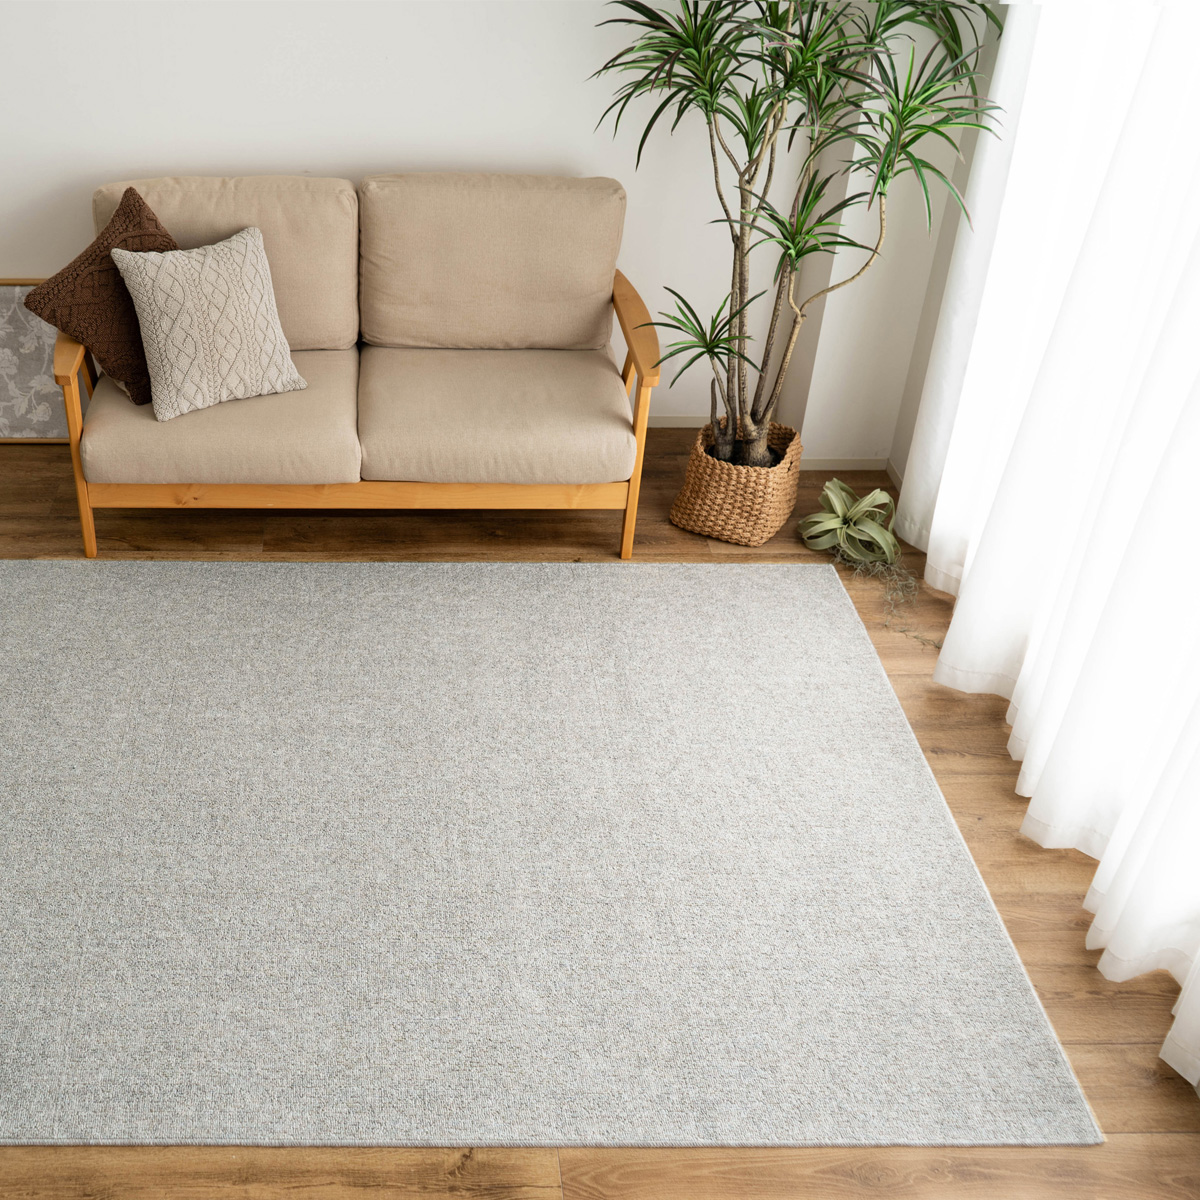 ラグ カーペット 2畳 江戸間 抗菌 防臭 日本製 シンプル フリーカット 176×176 ラグマット 正方形 北欧 おしゃれ 床暖房 絨毯  じゅうたん 子供部屋